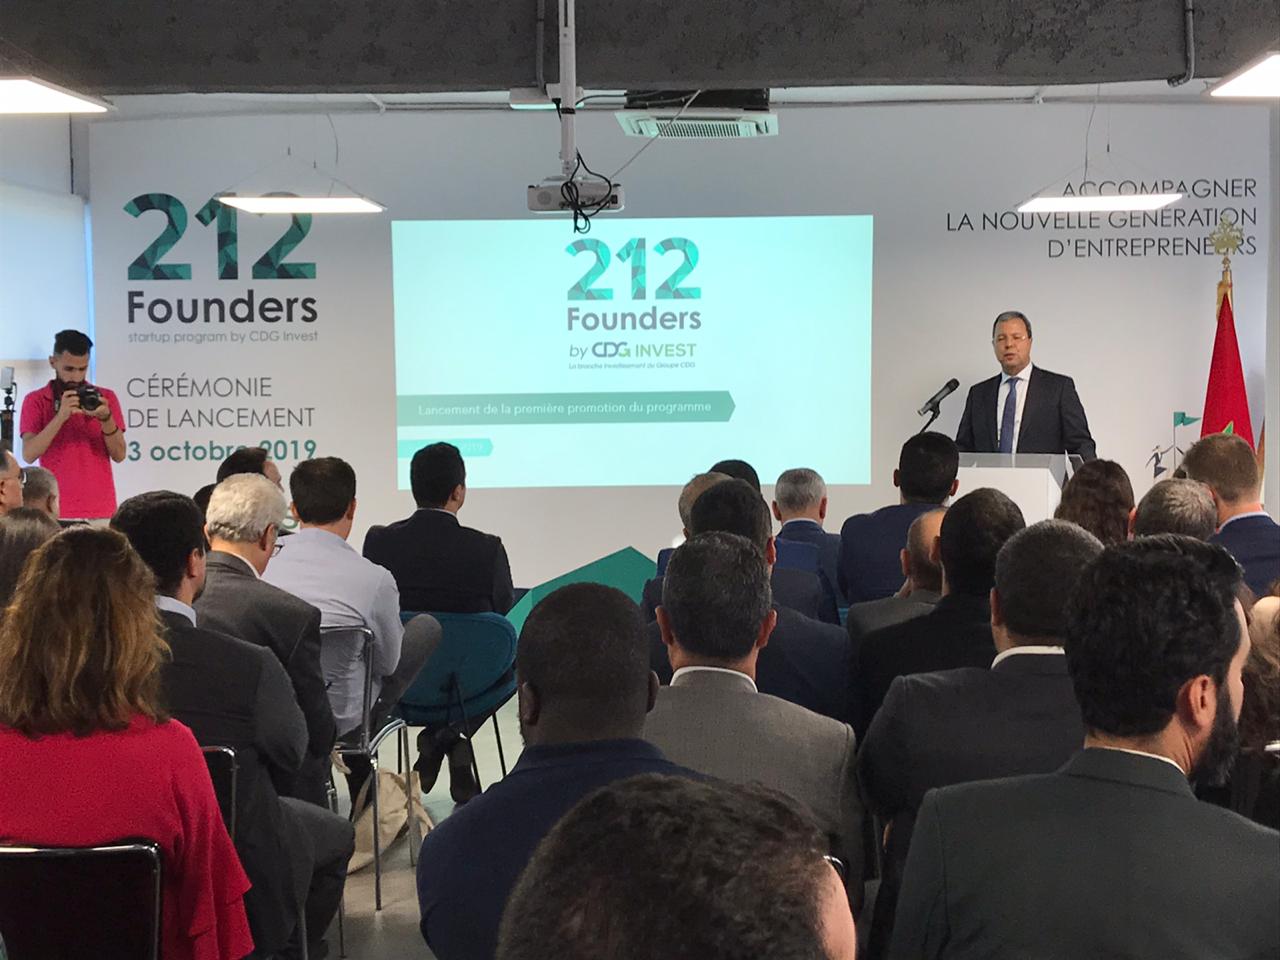 212 Founders réalise la première cession de startup au Maroc